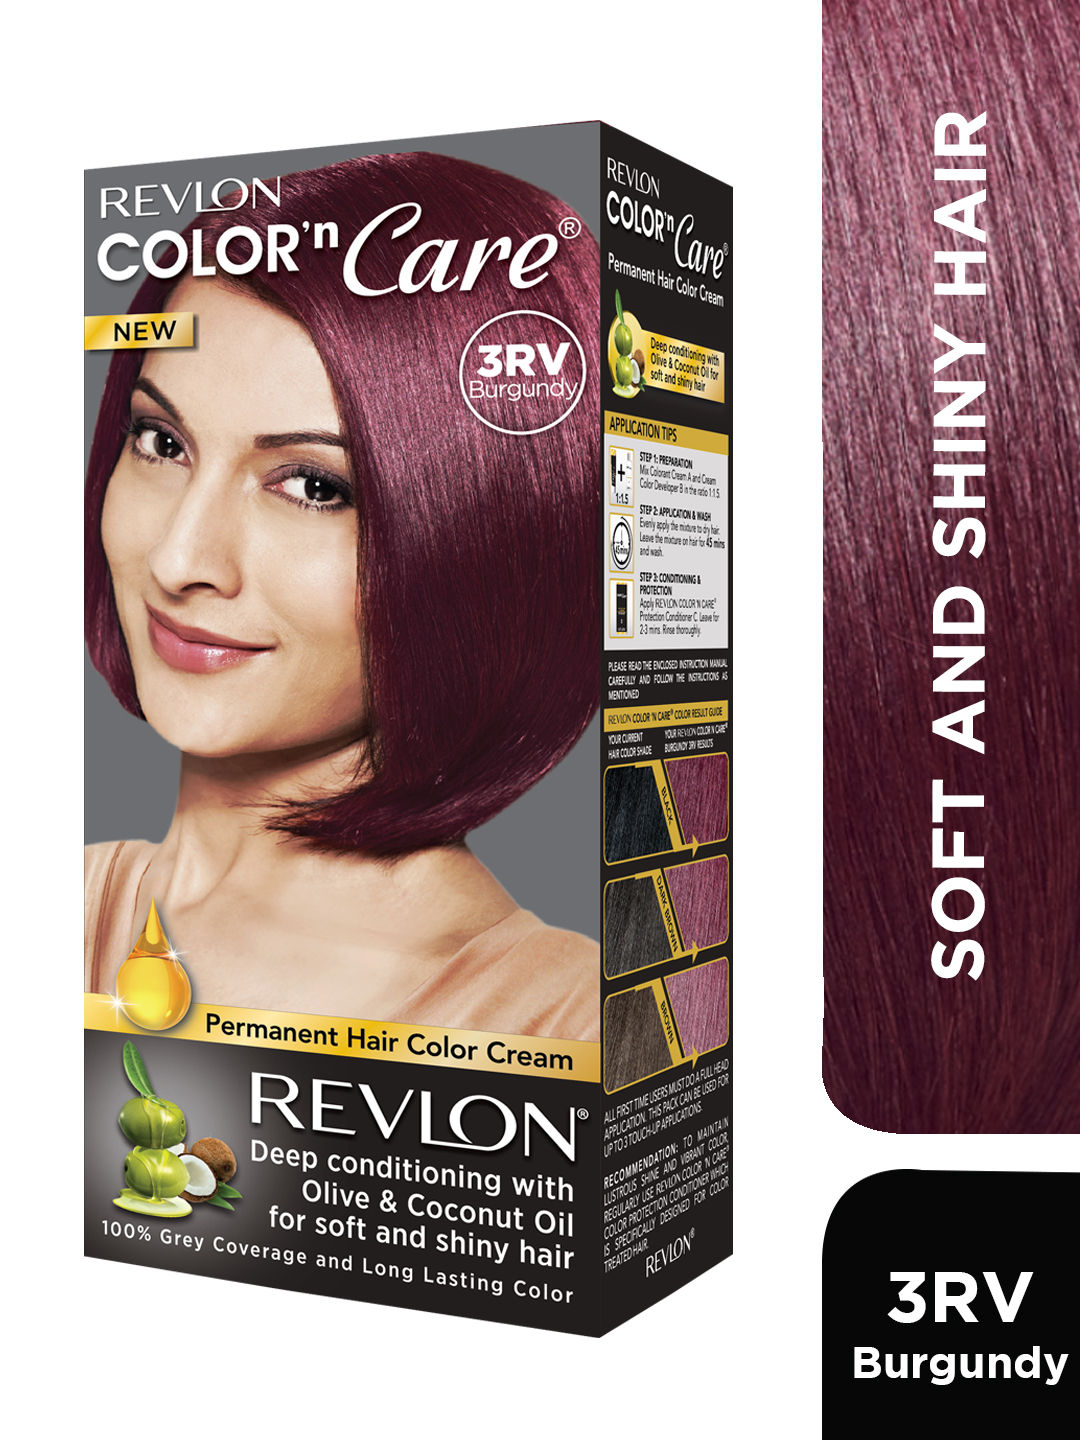 LOreal Paris Casting Creme Gloss Ammonia Free Hair Colour Black Cherry  360 875 g  72 ml g  JioMart